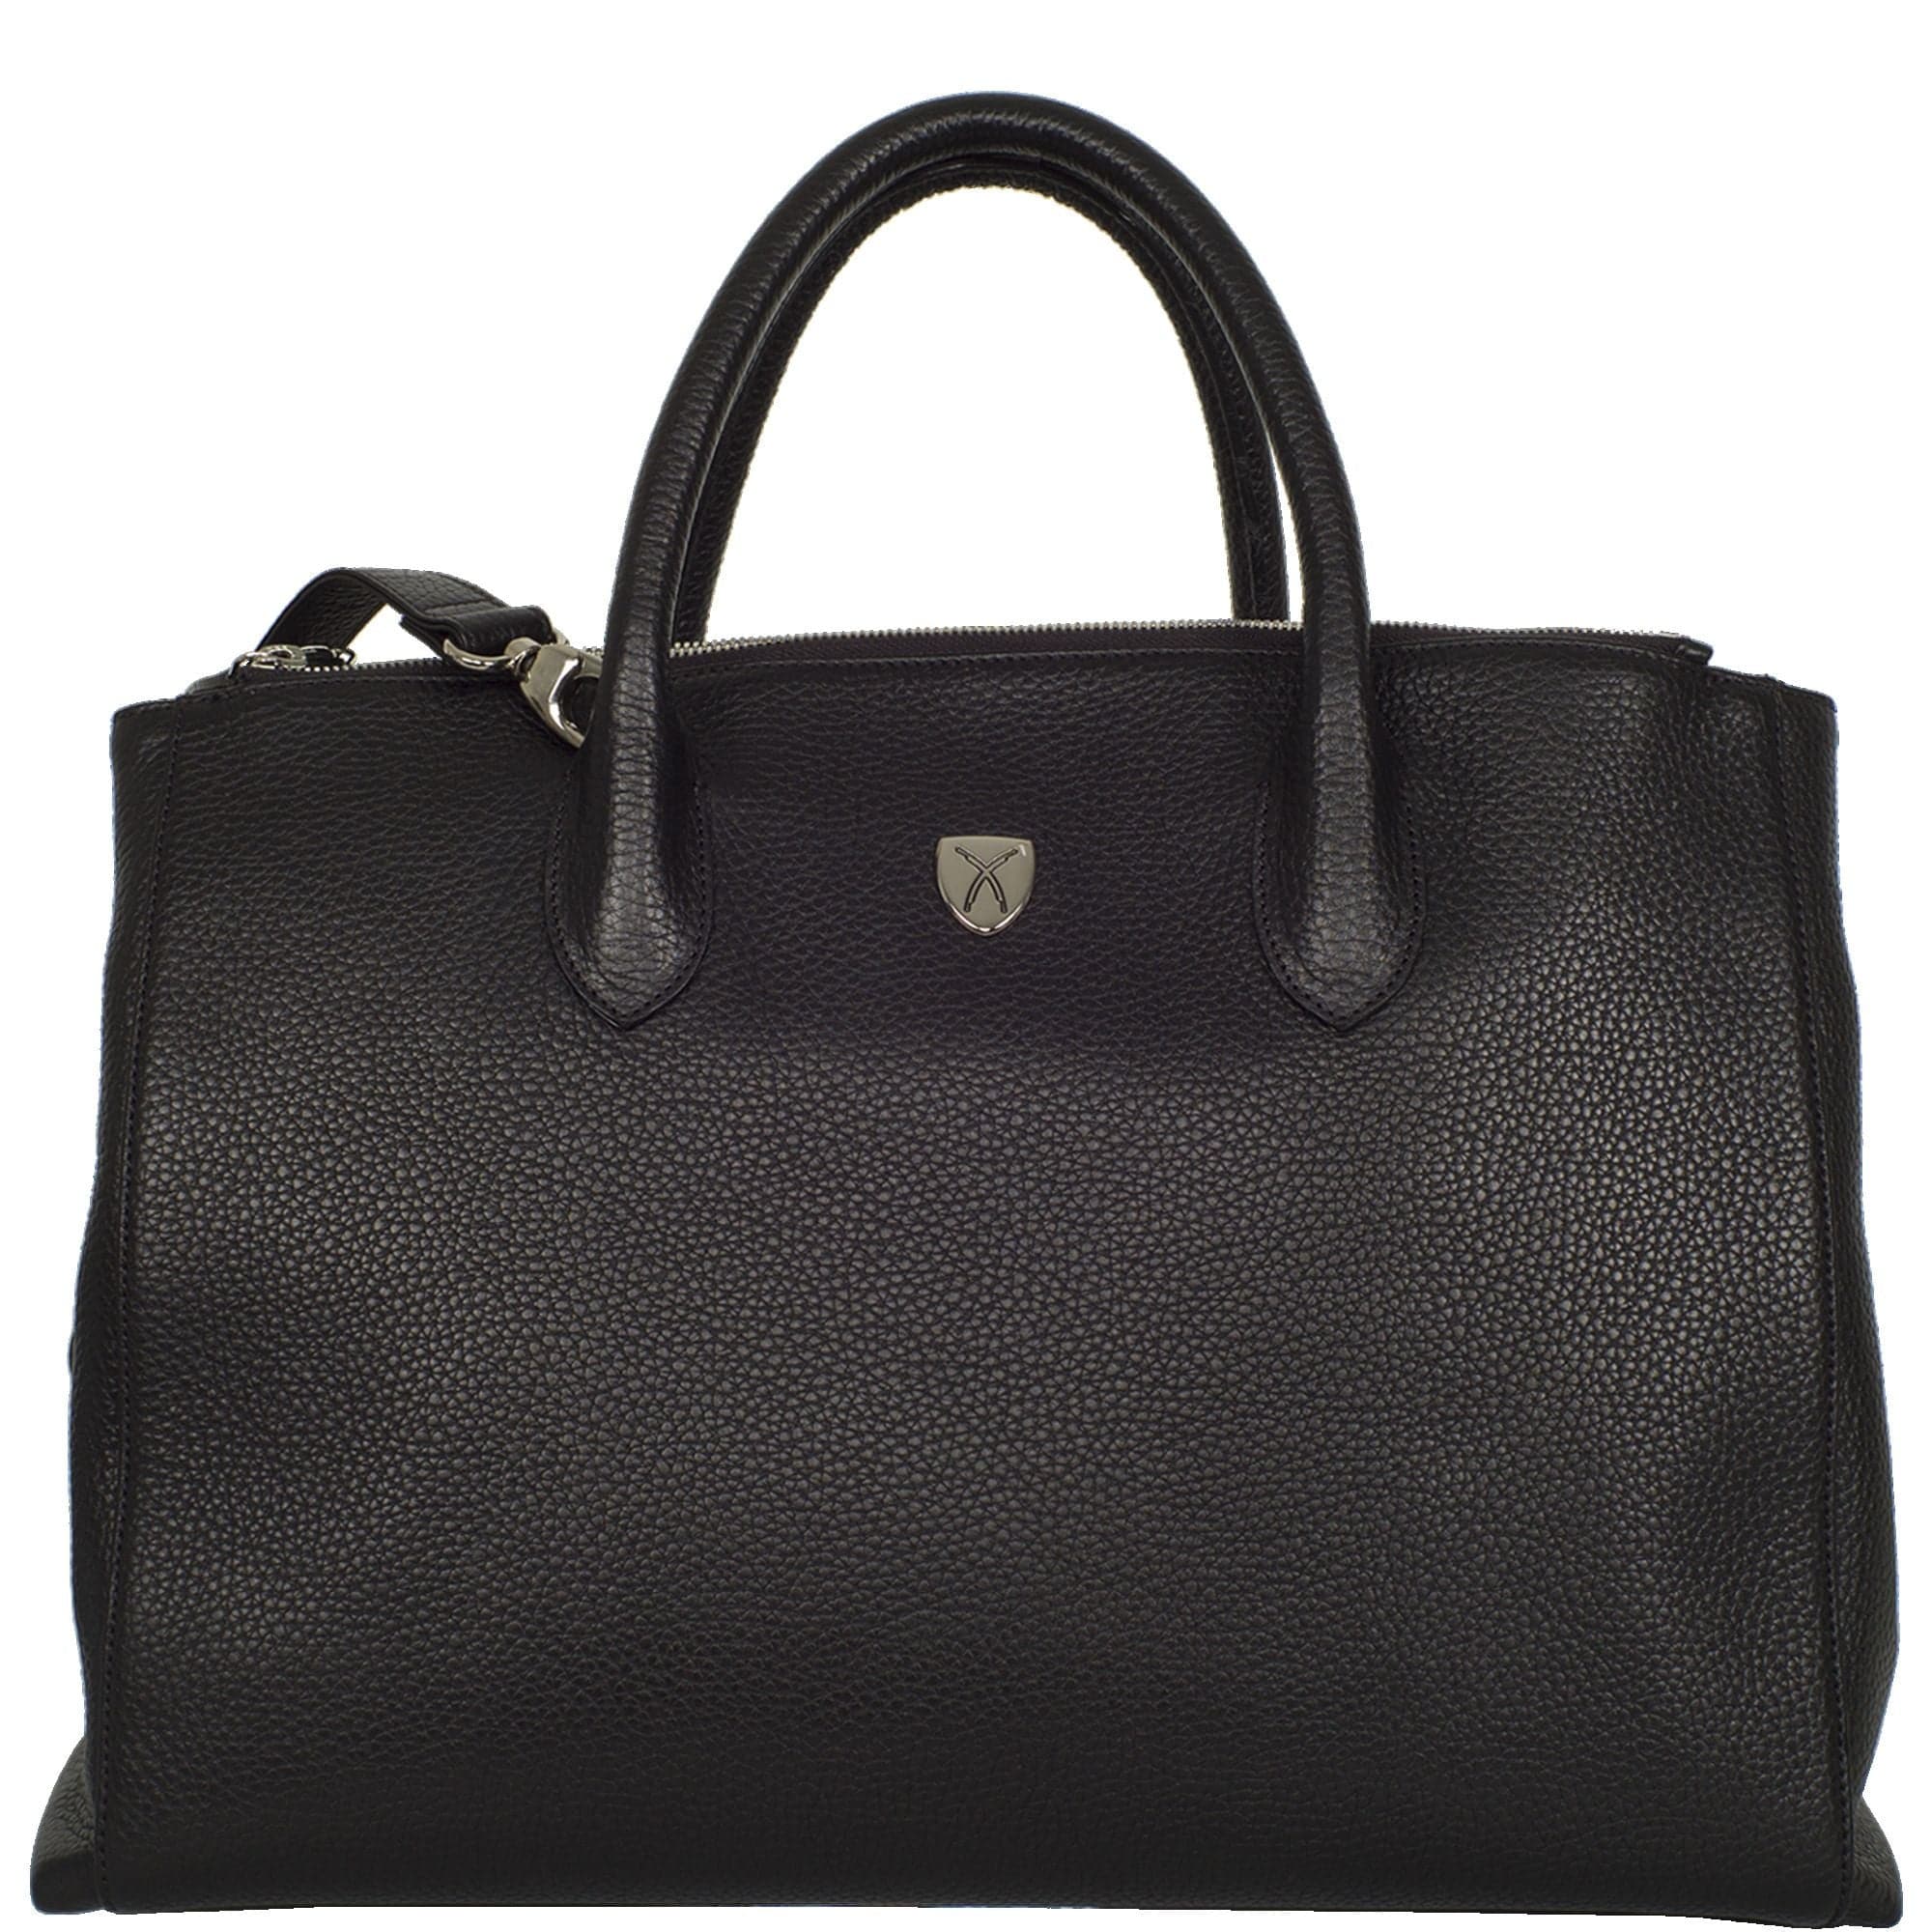 Damen Businesstasche Handtasche 15 Zoll Leder schwarz